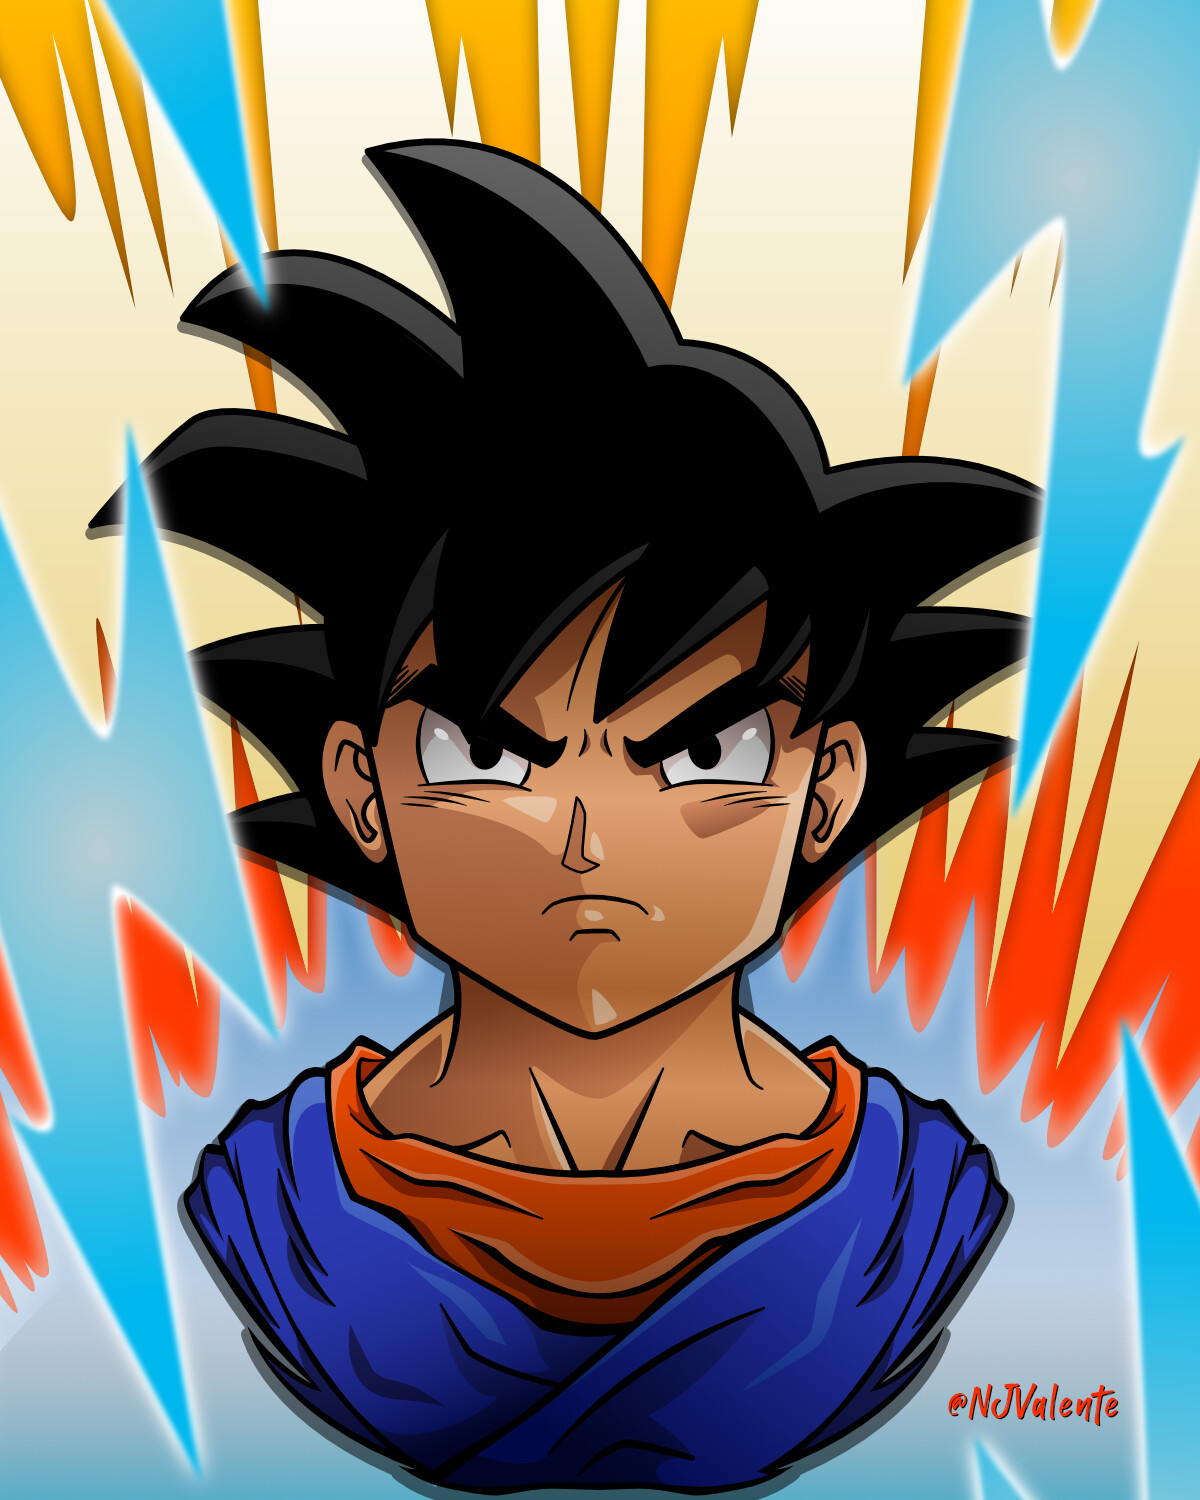 Kid Goku vector illustration done in Affinity Designer.